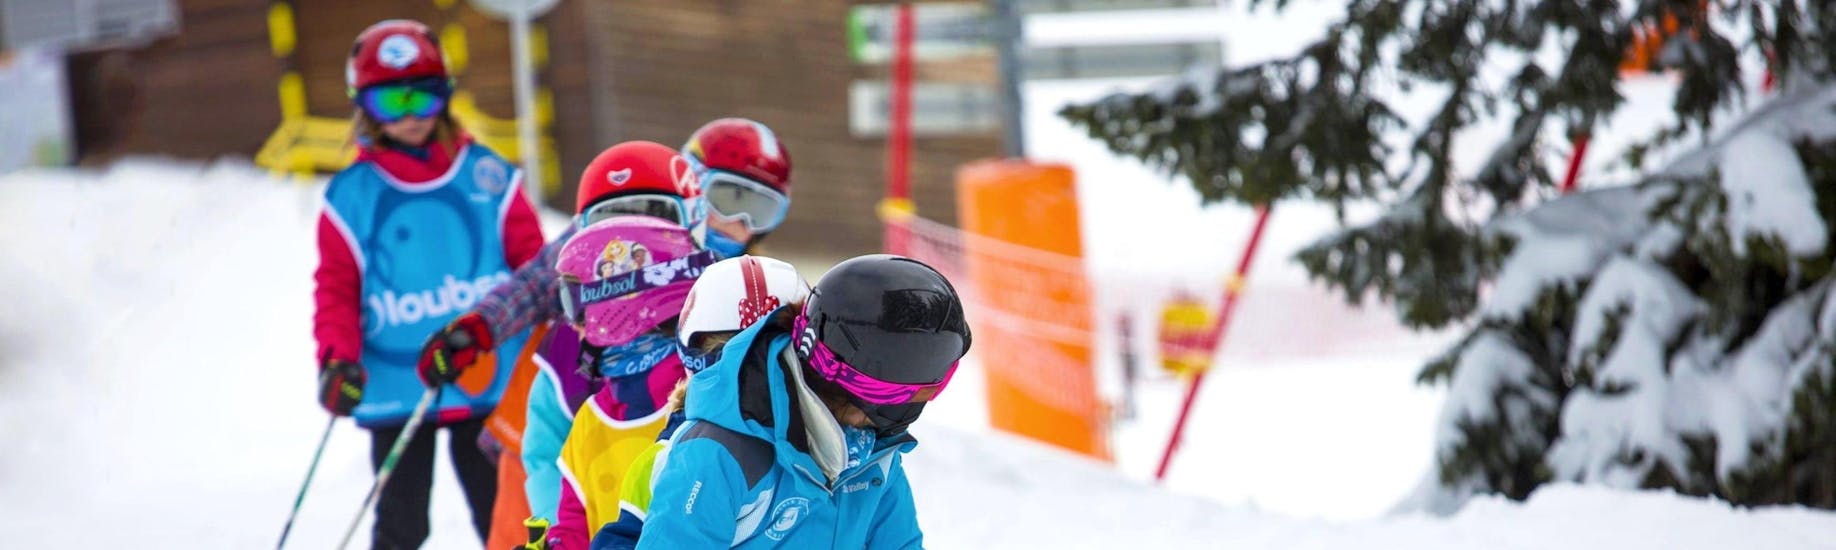 Cours de ski Enfants (6-13 ans) pour Skieurs expérimentés.